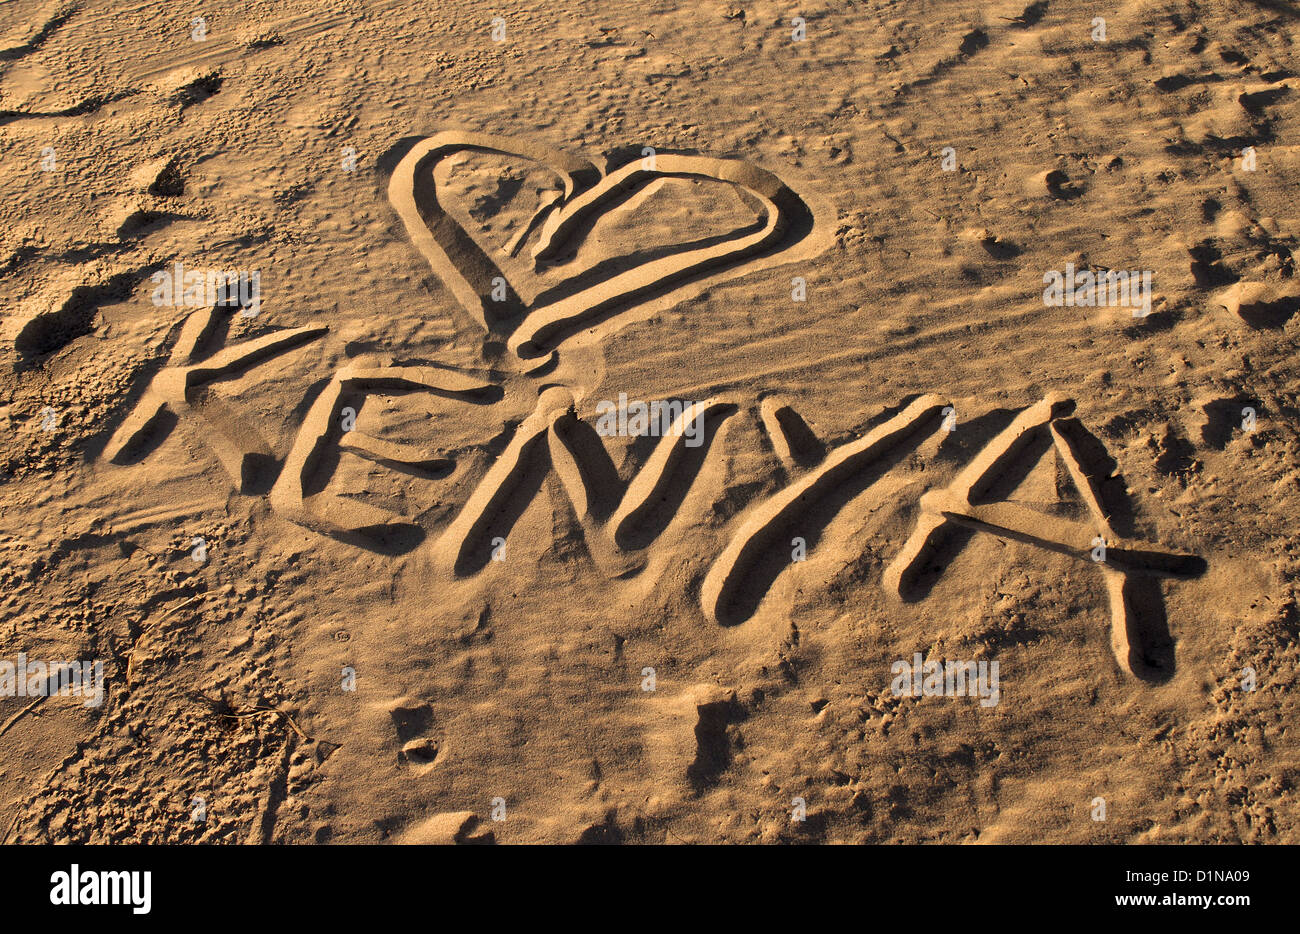 Kenia, das Wort geschrieben in den Sand, Malindi, Kenia, Afrika Kenia Stockfoto